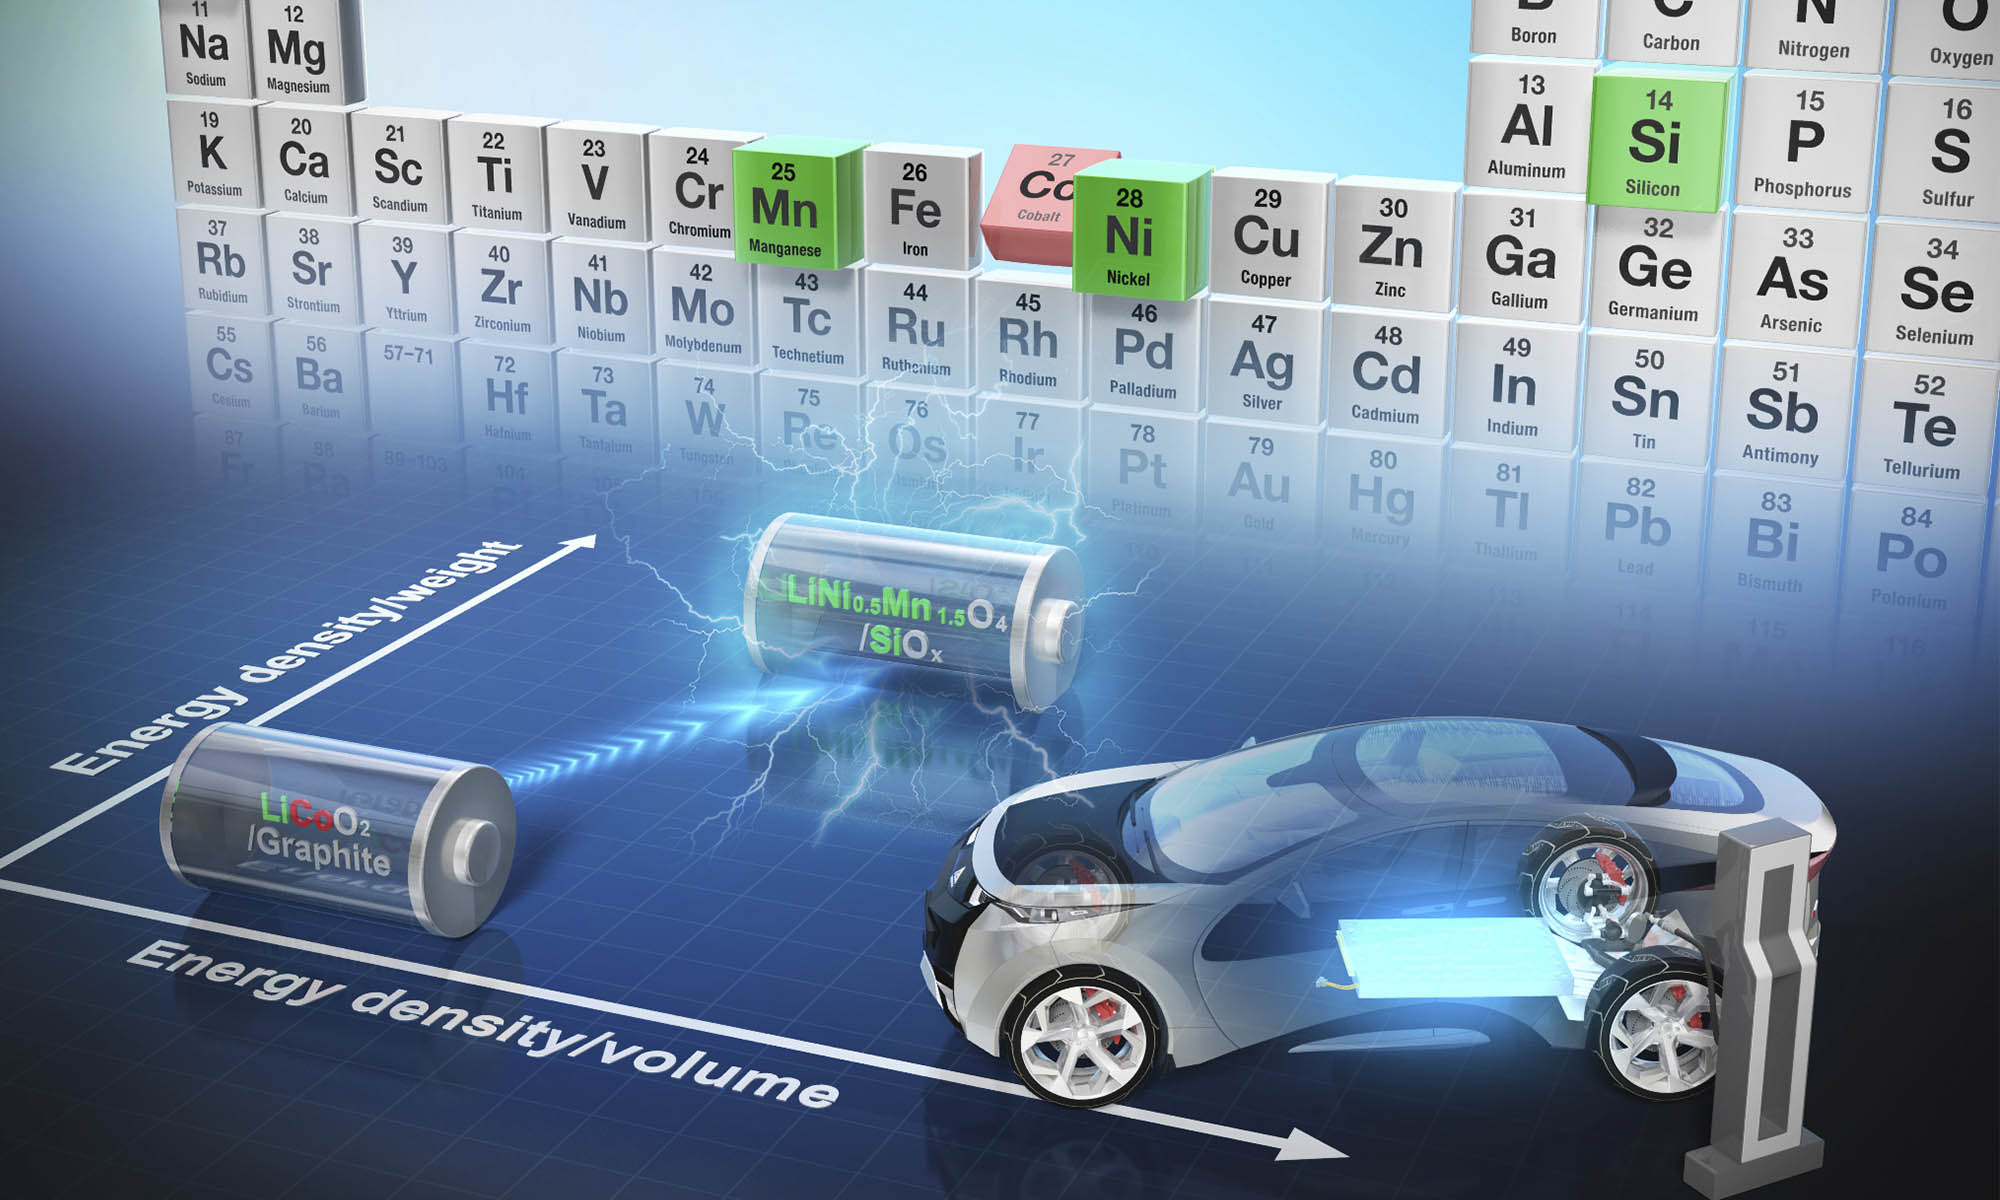 Los investigadores de la Universidad de Tokio han reemplazado el cobalto por elementos más seguros y abundantes.